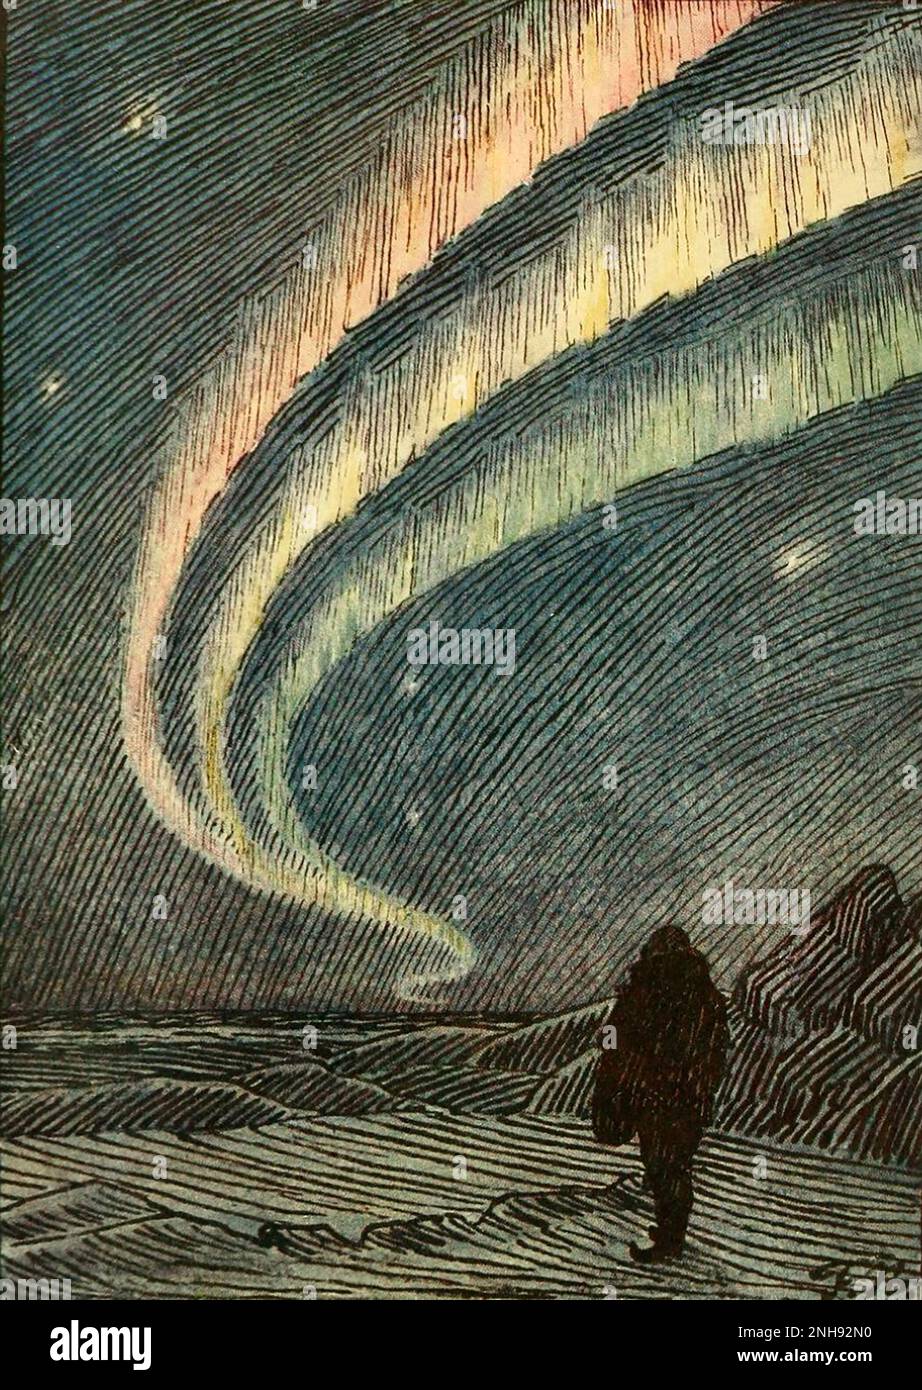 Ilustración de las auroras boreales de 'En las nieblas del norte' de Fridtjof Nansen, 1911. Fridtjof Nansen (1861-1930) fue explorador noruego y premio Nobel de la Paz. Foto de stock